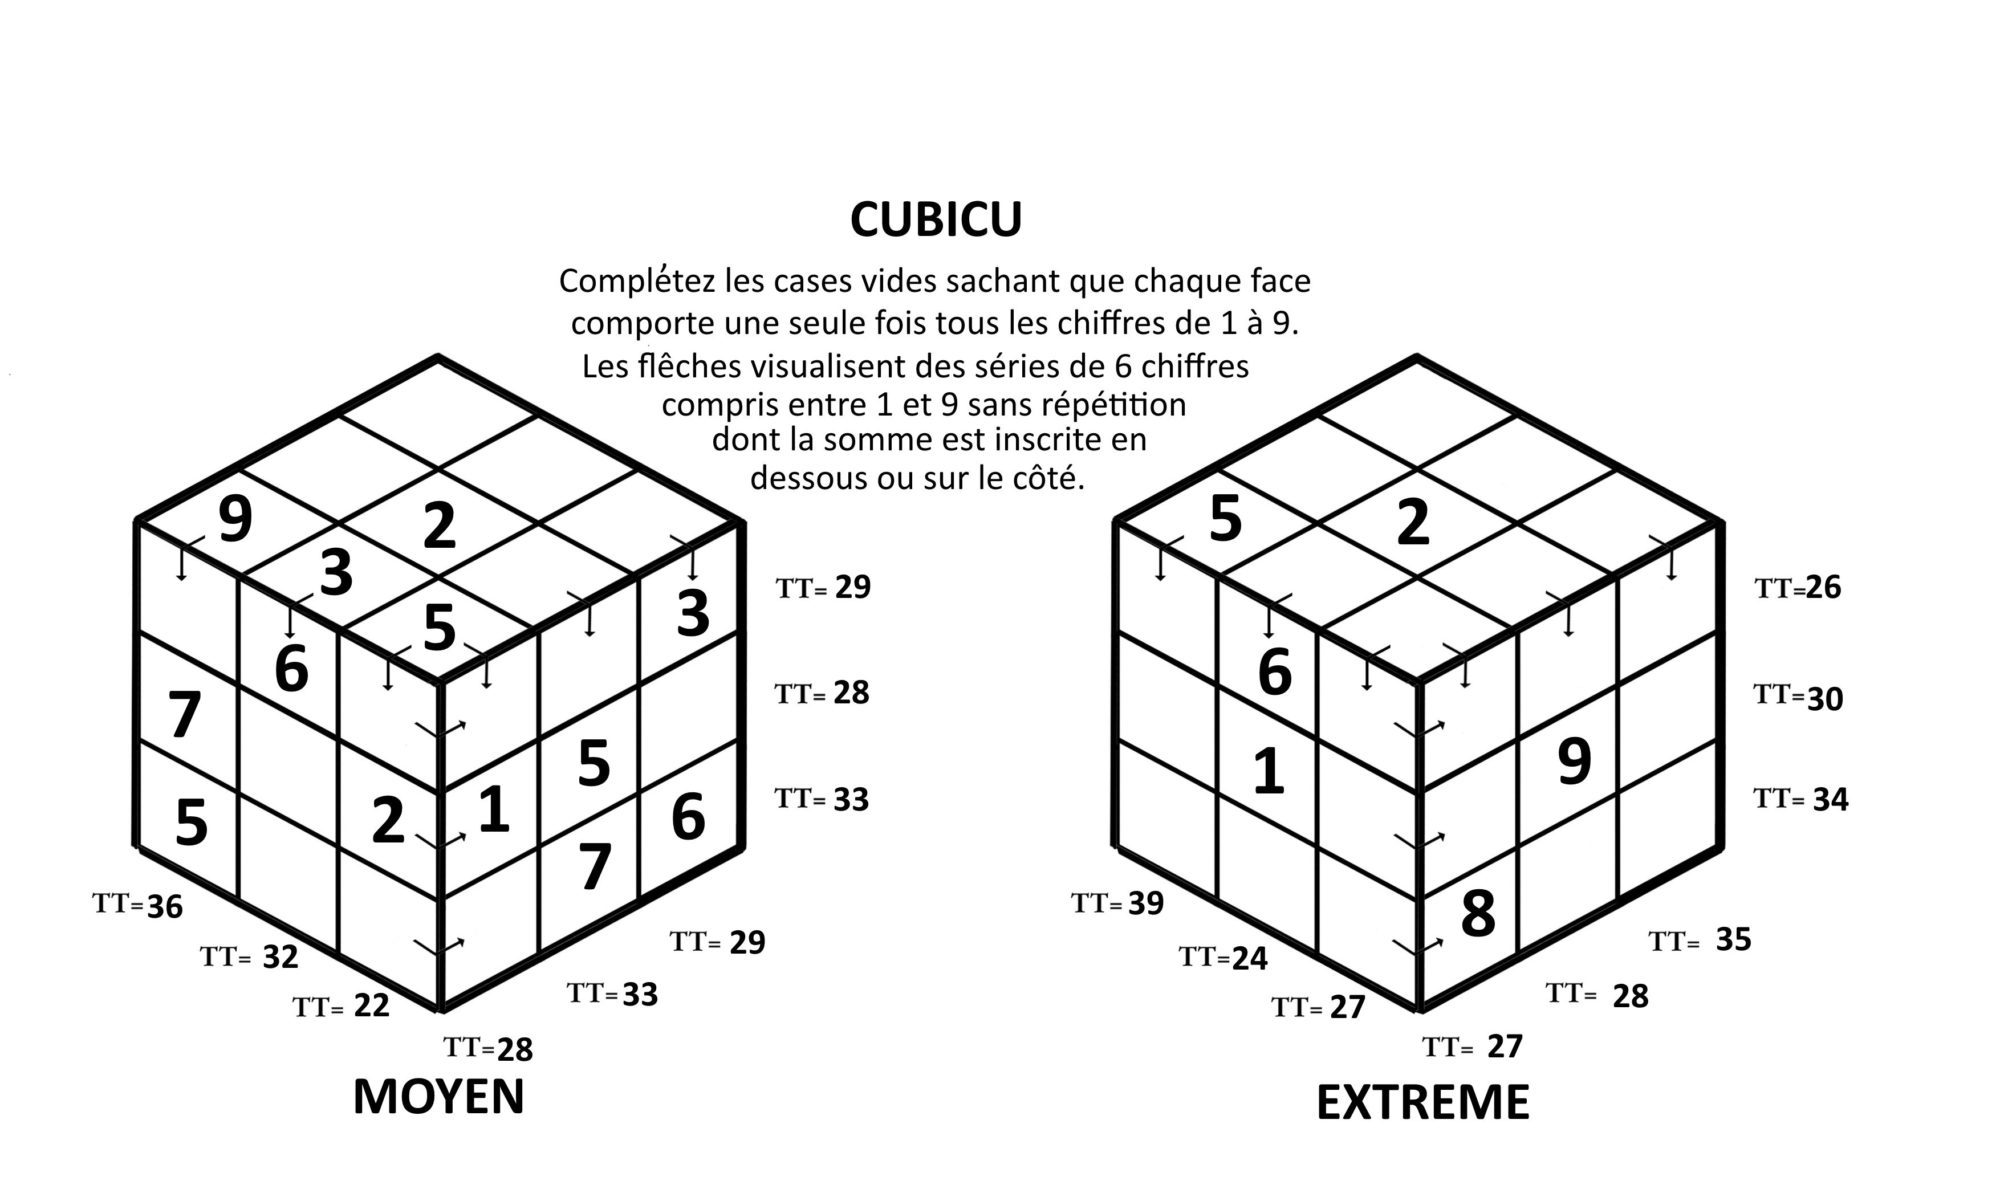 Cubicu